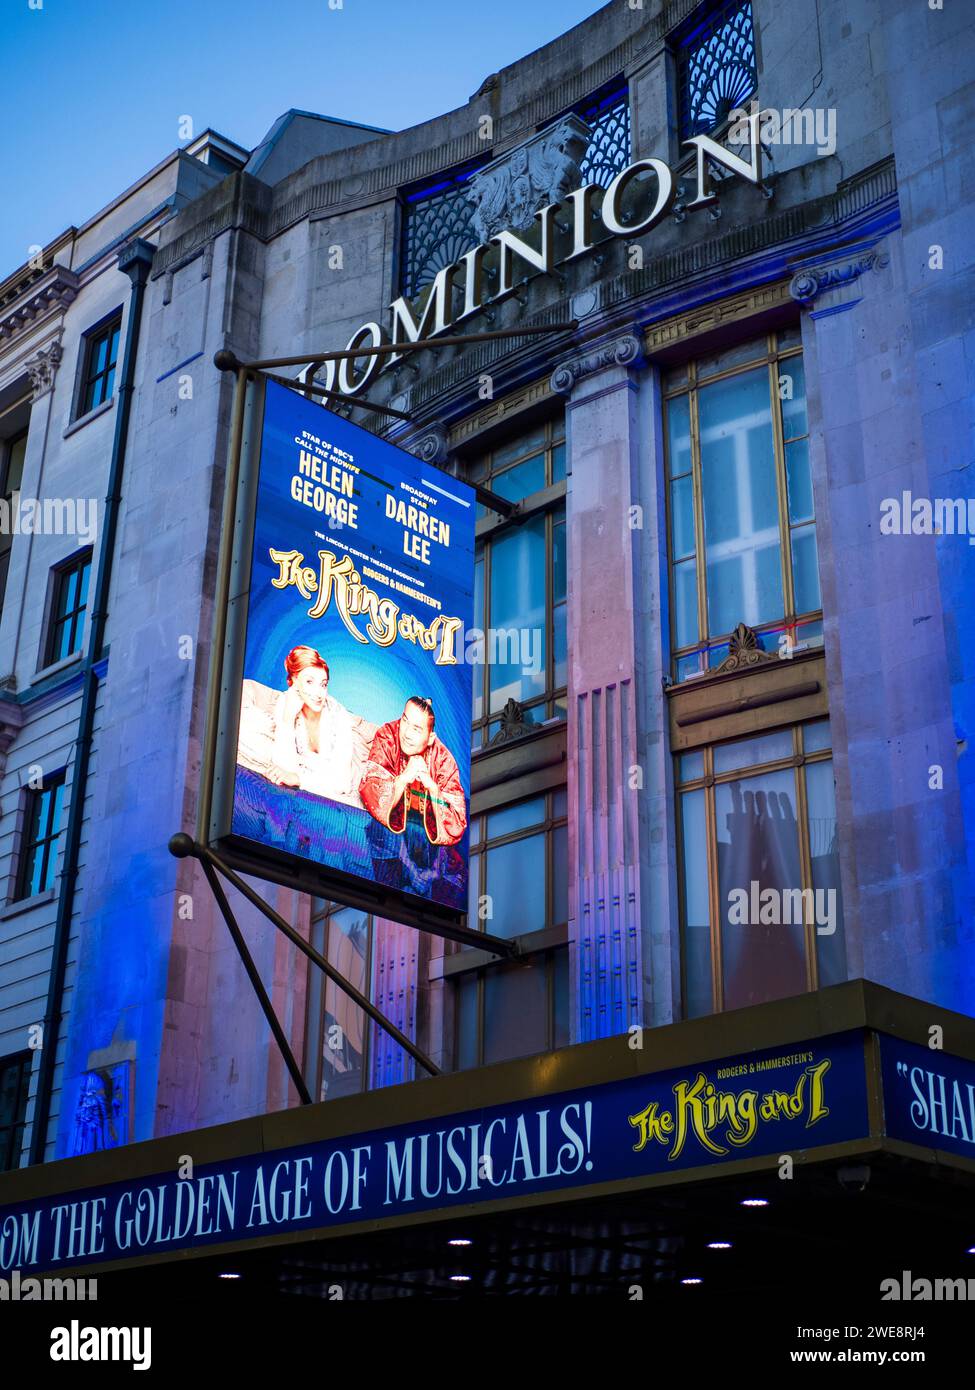 The King and i at the Dominion Theatre, Tottenham Court Road, Londra, Inghilterra, Regno Unito, GB. Foto Stock